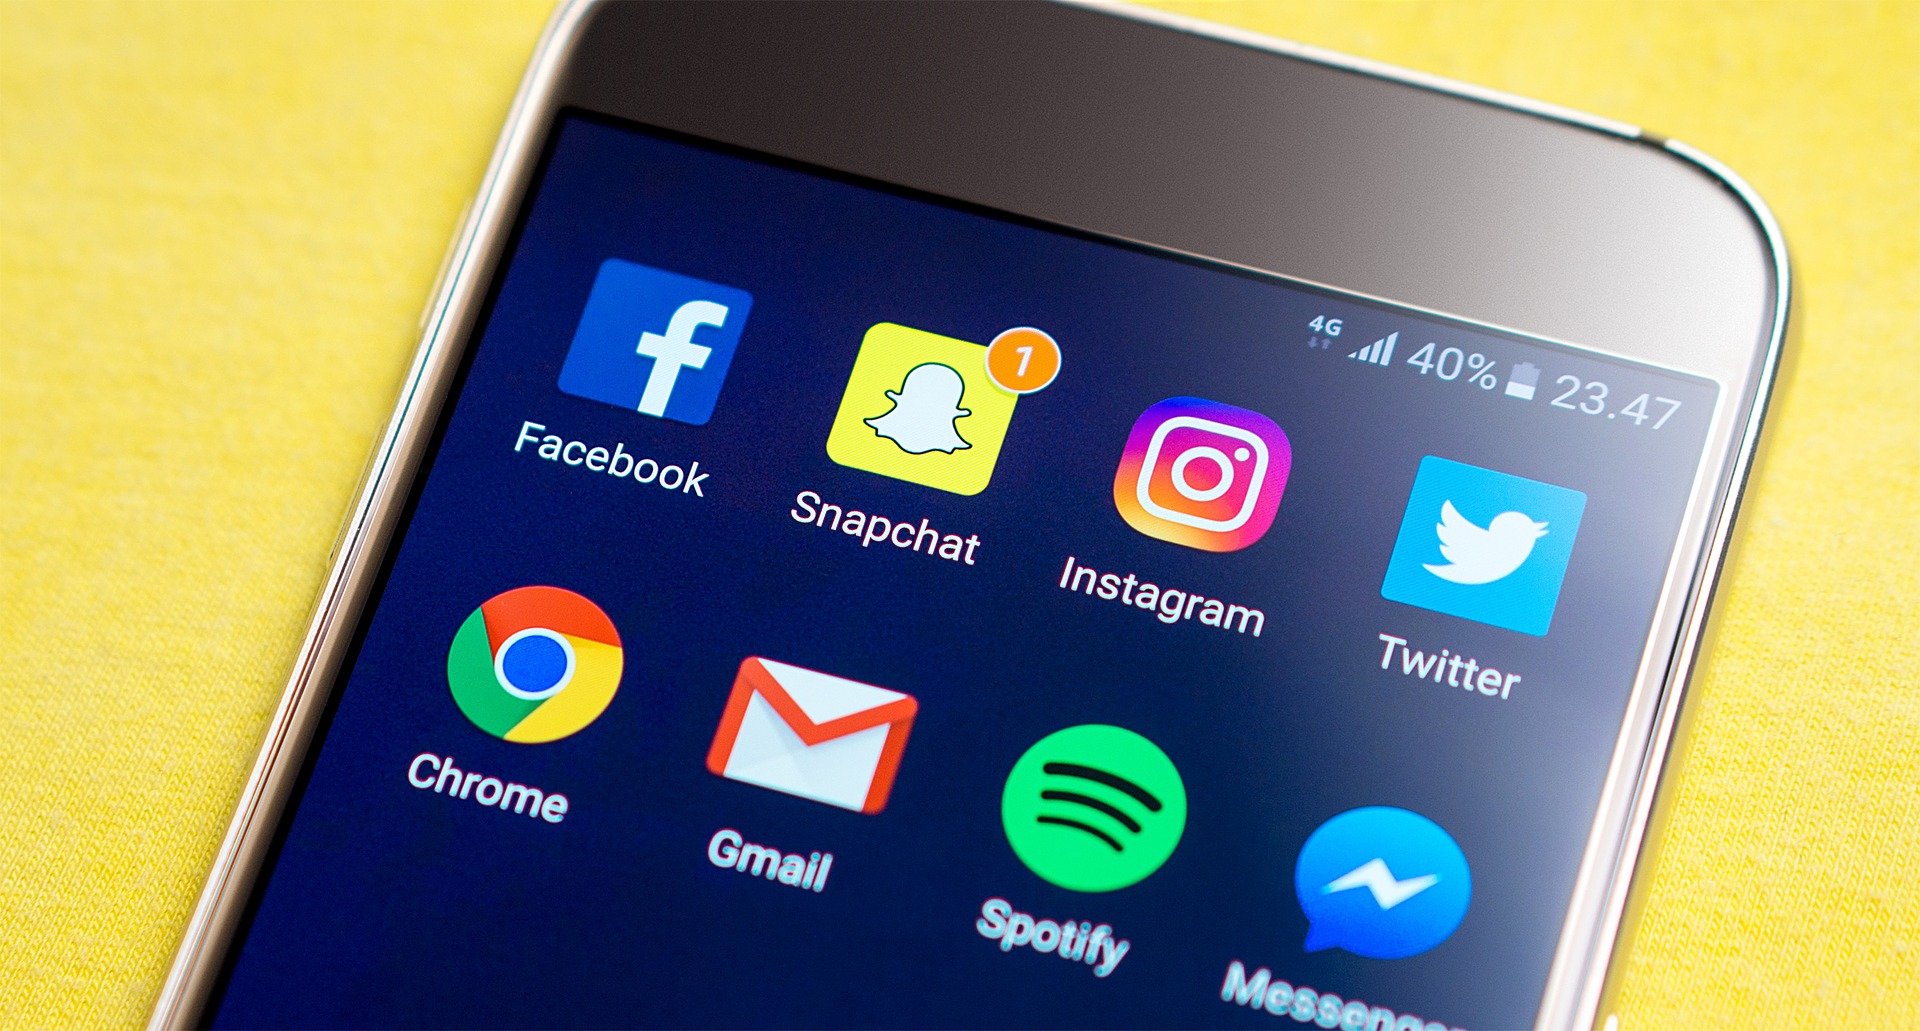 Snapchat mister brukere for første gang noen sinne